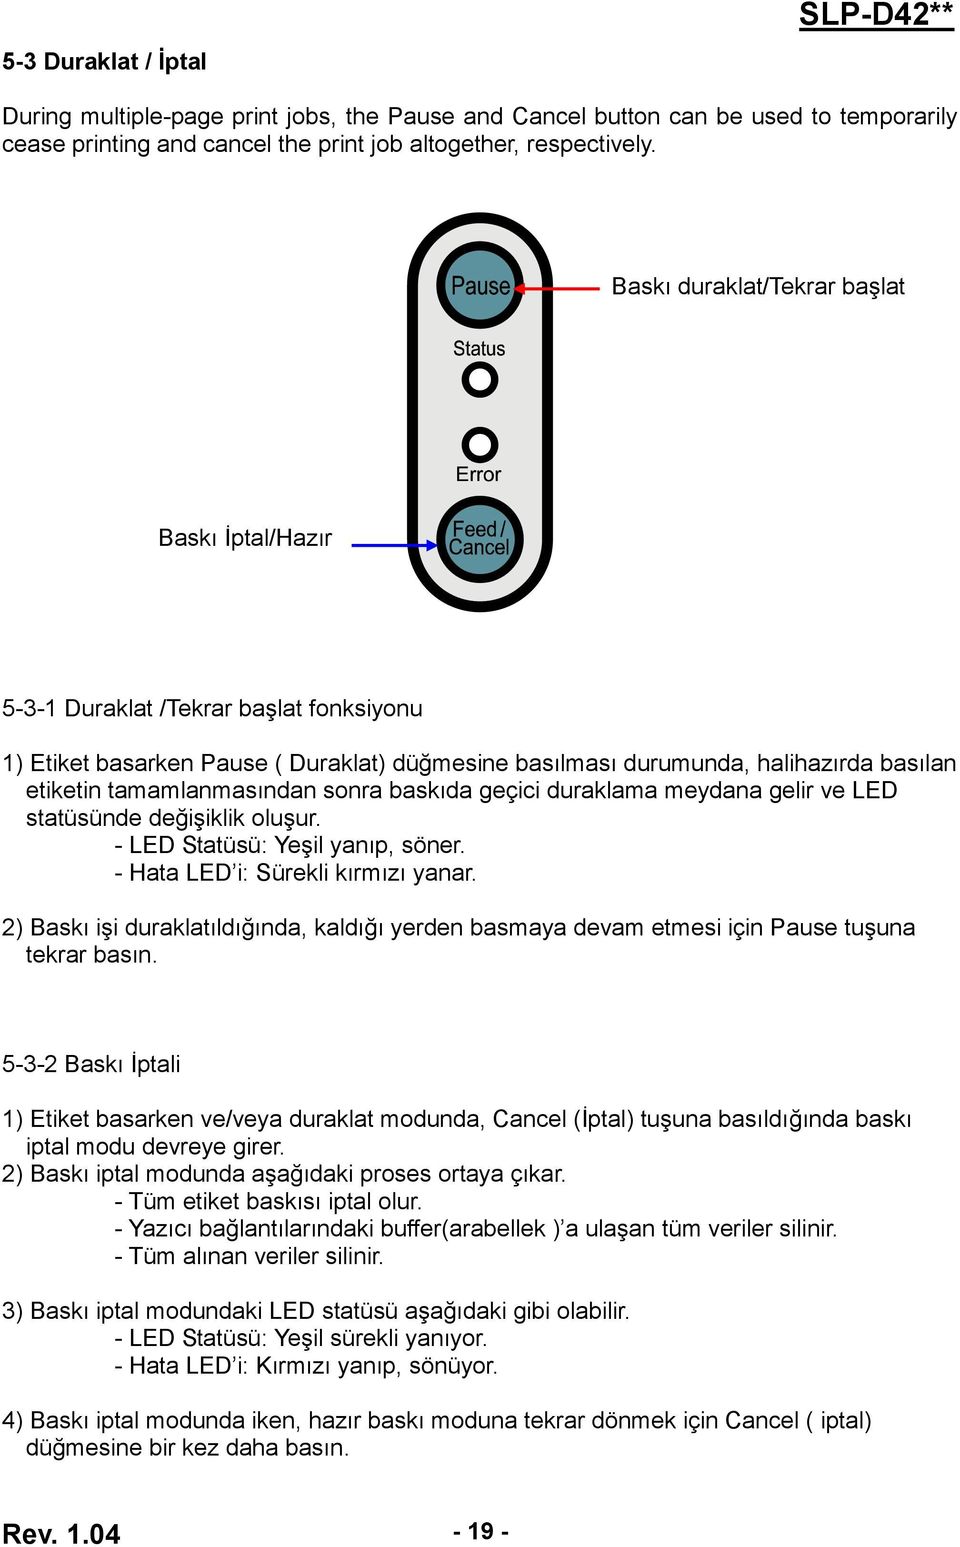 tamamlanmasından sonra baskıda geçici duraklama meydana gelir ve LED statüsünde değişiklik oluşur. - LED Statüsü: Yeşil yanıp, söner. - Hata LED i: Sürekli kırmızı yanar.